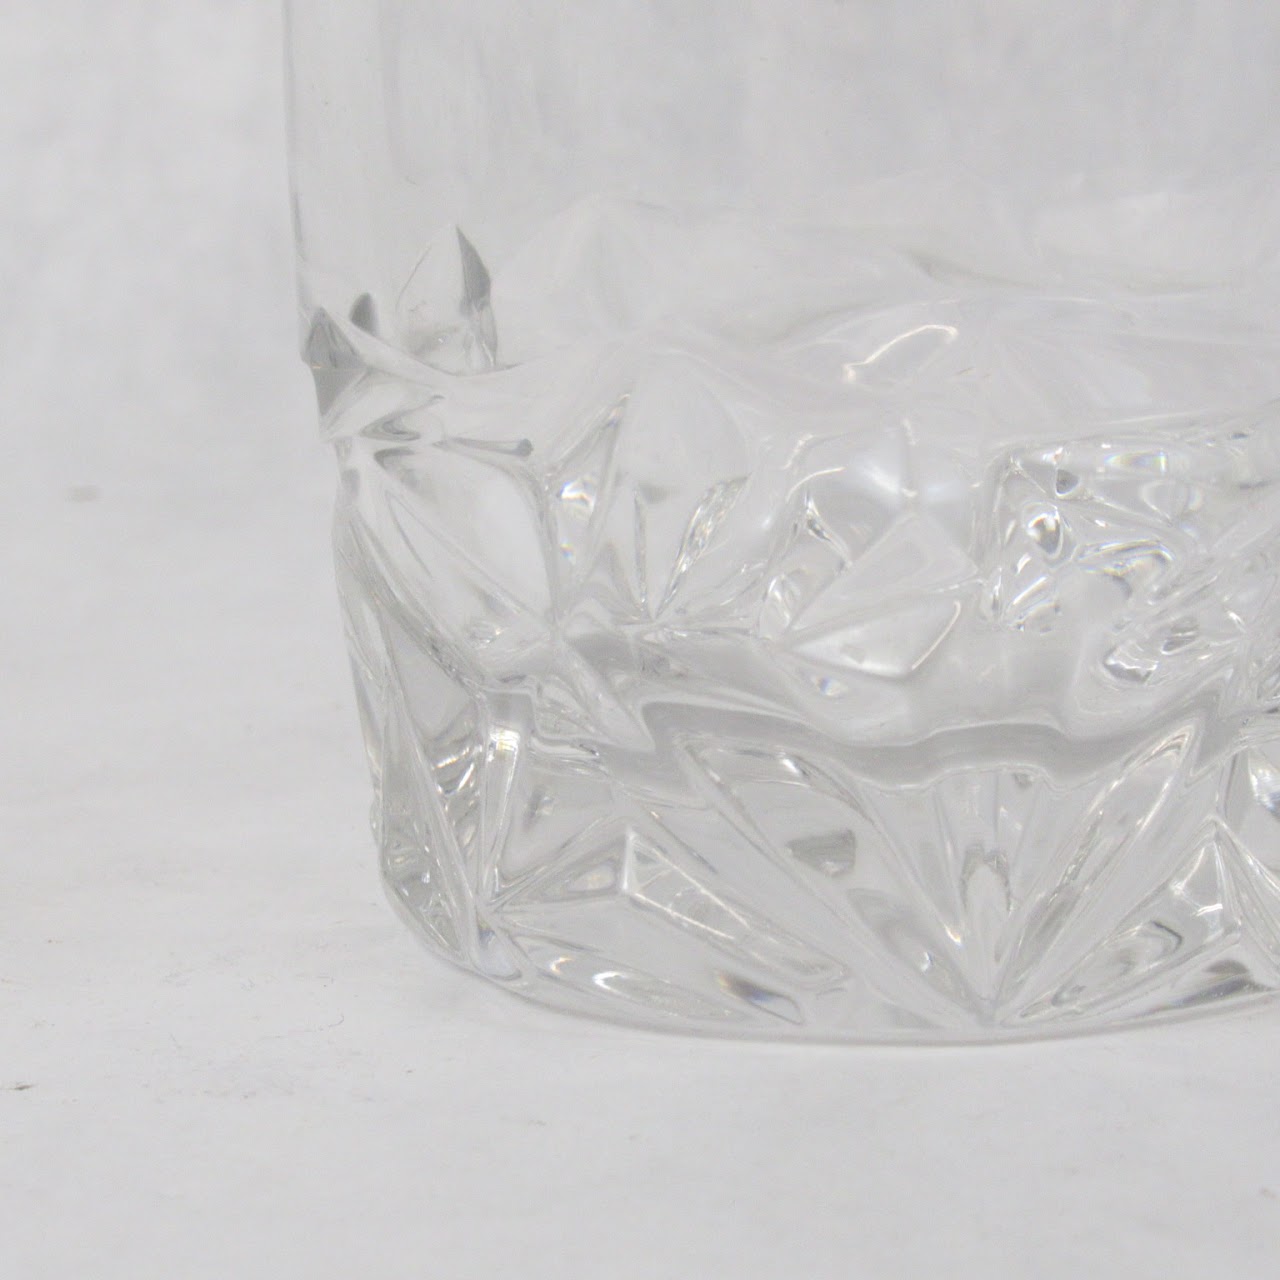 Tiffany & Co. Crystal Rock Cut Old Fashioned Glass